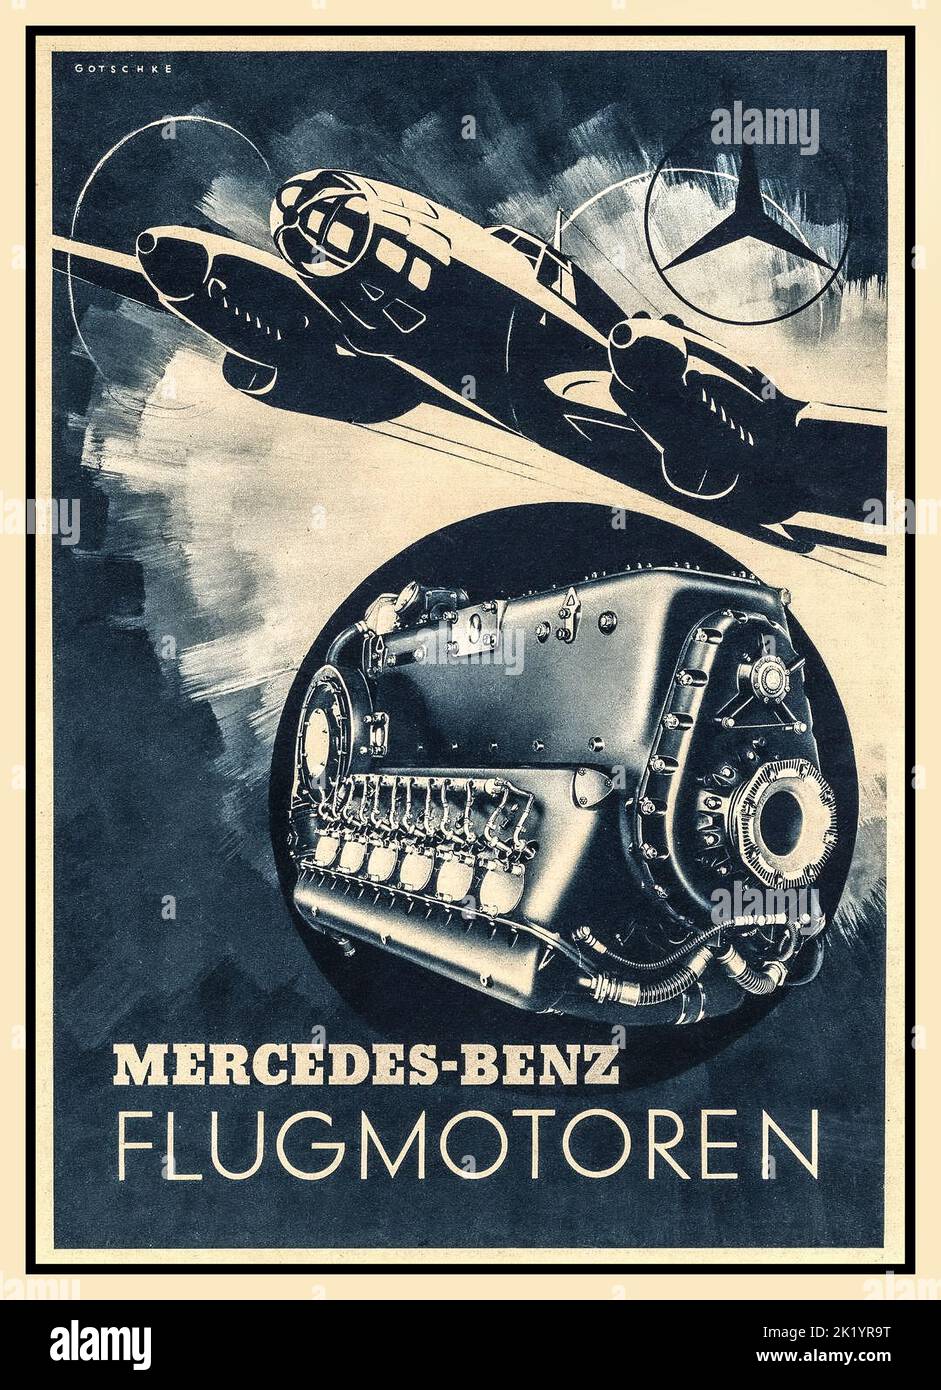 1940s Mercedes WW2 affiche Publicité pour Mercedes moteur d'aviation en Allemagne nazie bombardier Heinkel He 111 Mainstay de la Luftwaffe Bomber Force dans la Seconde Guerre mondiale 'Flugmotoren' Mercedes-Benz Stuttgart - Unterturkheim Allemagne nazie Seconde Guerre mondiale Banque D'Images